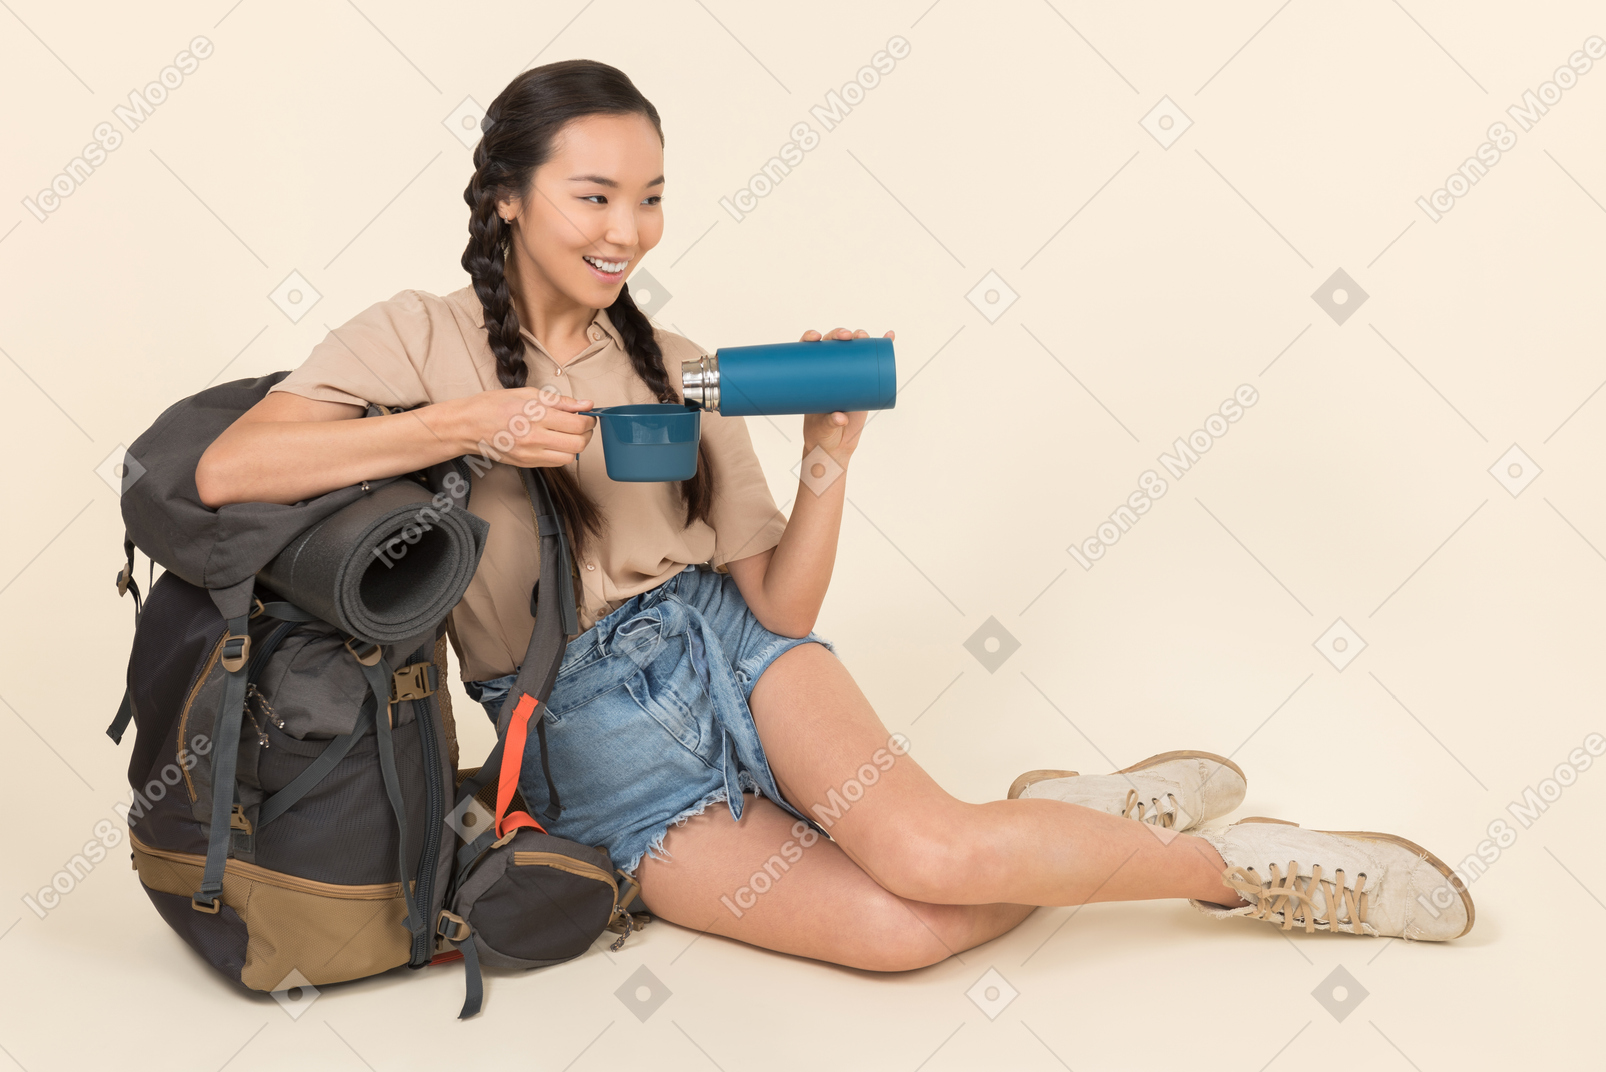 Jeune femme asiatique verser le liquide de thermos dans une tasse de thermos